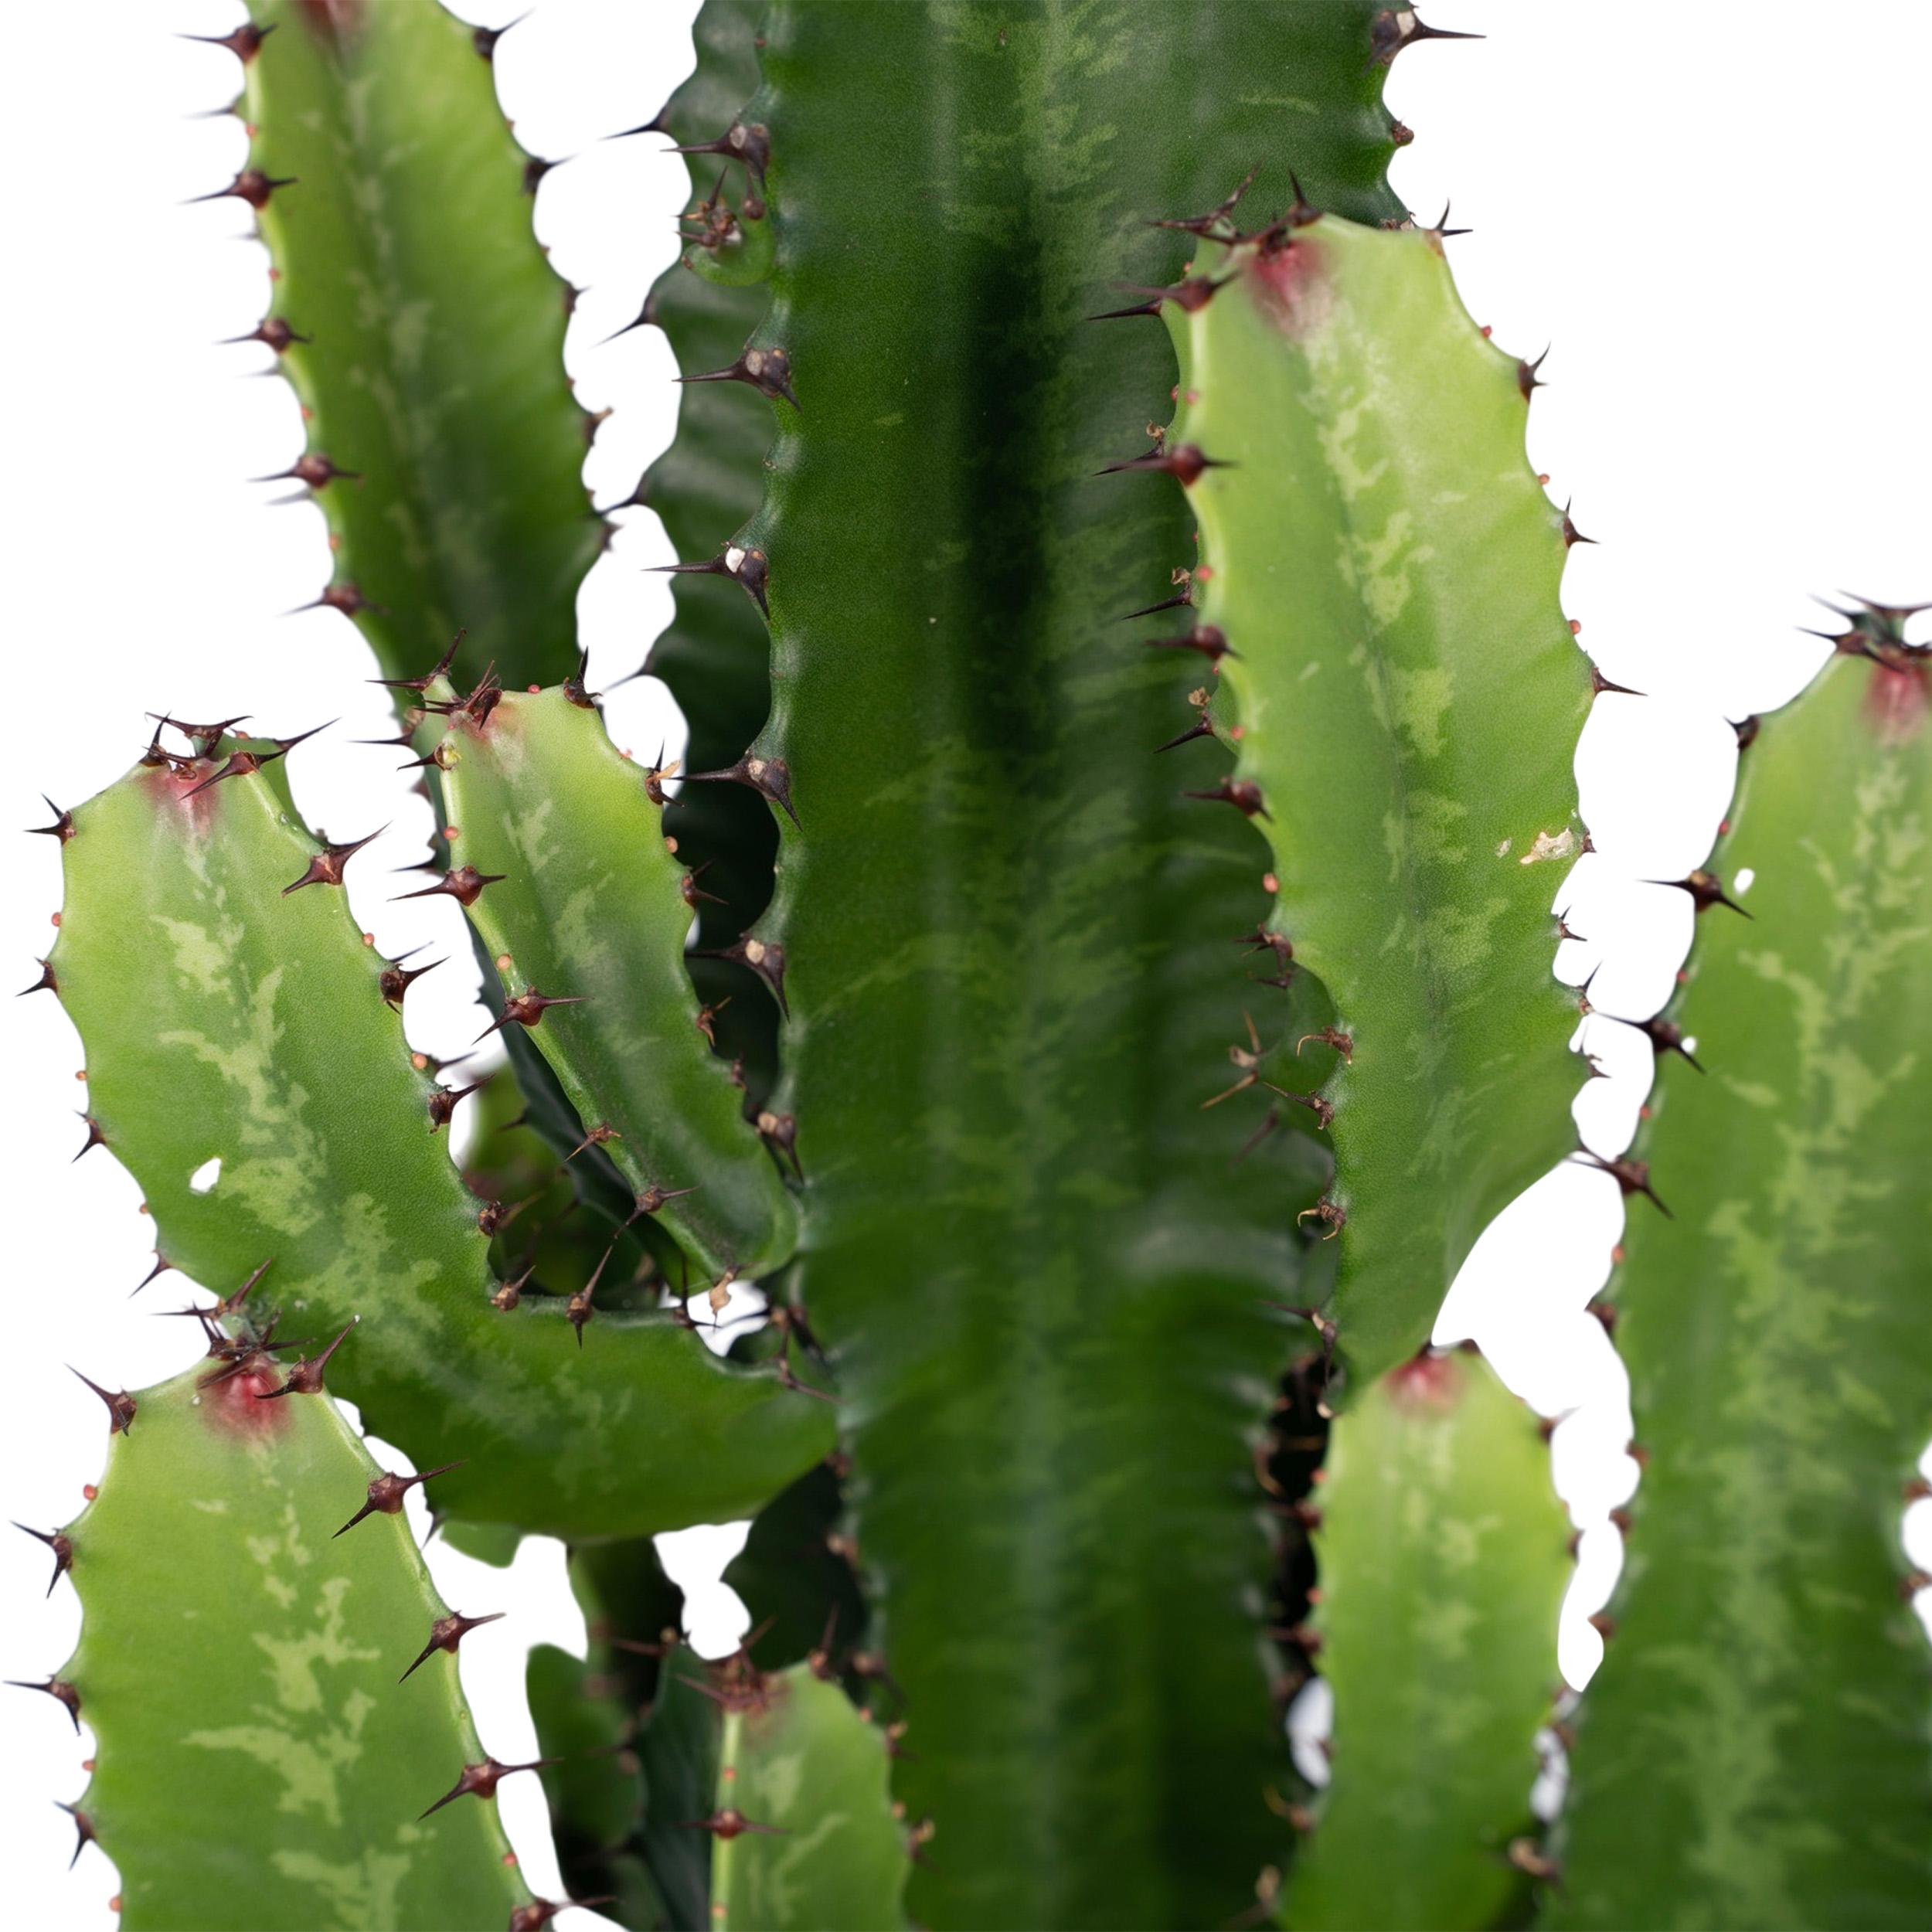 Euphorbia Acrurensis